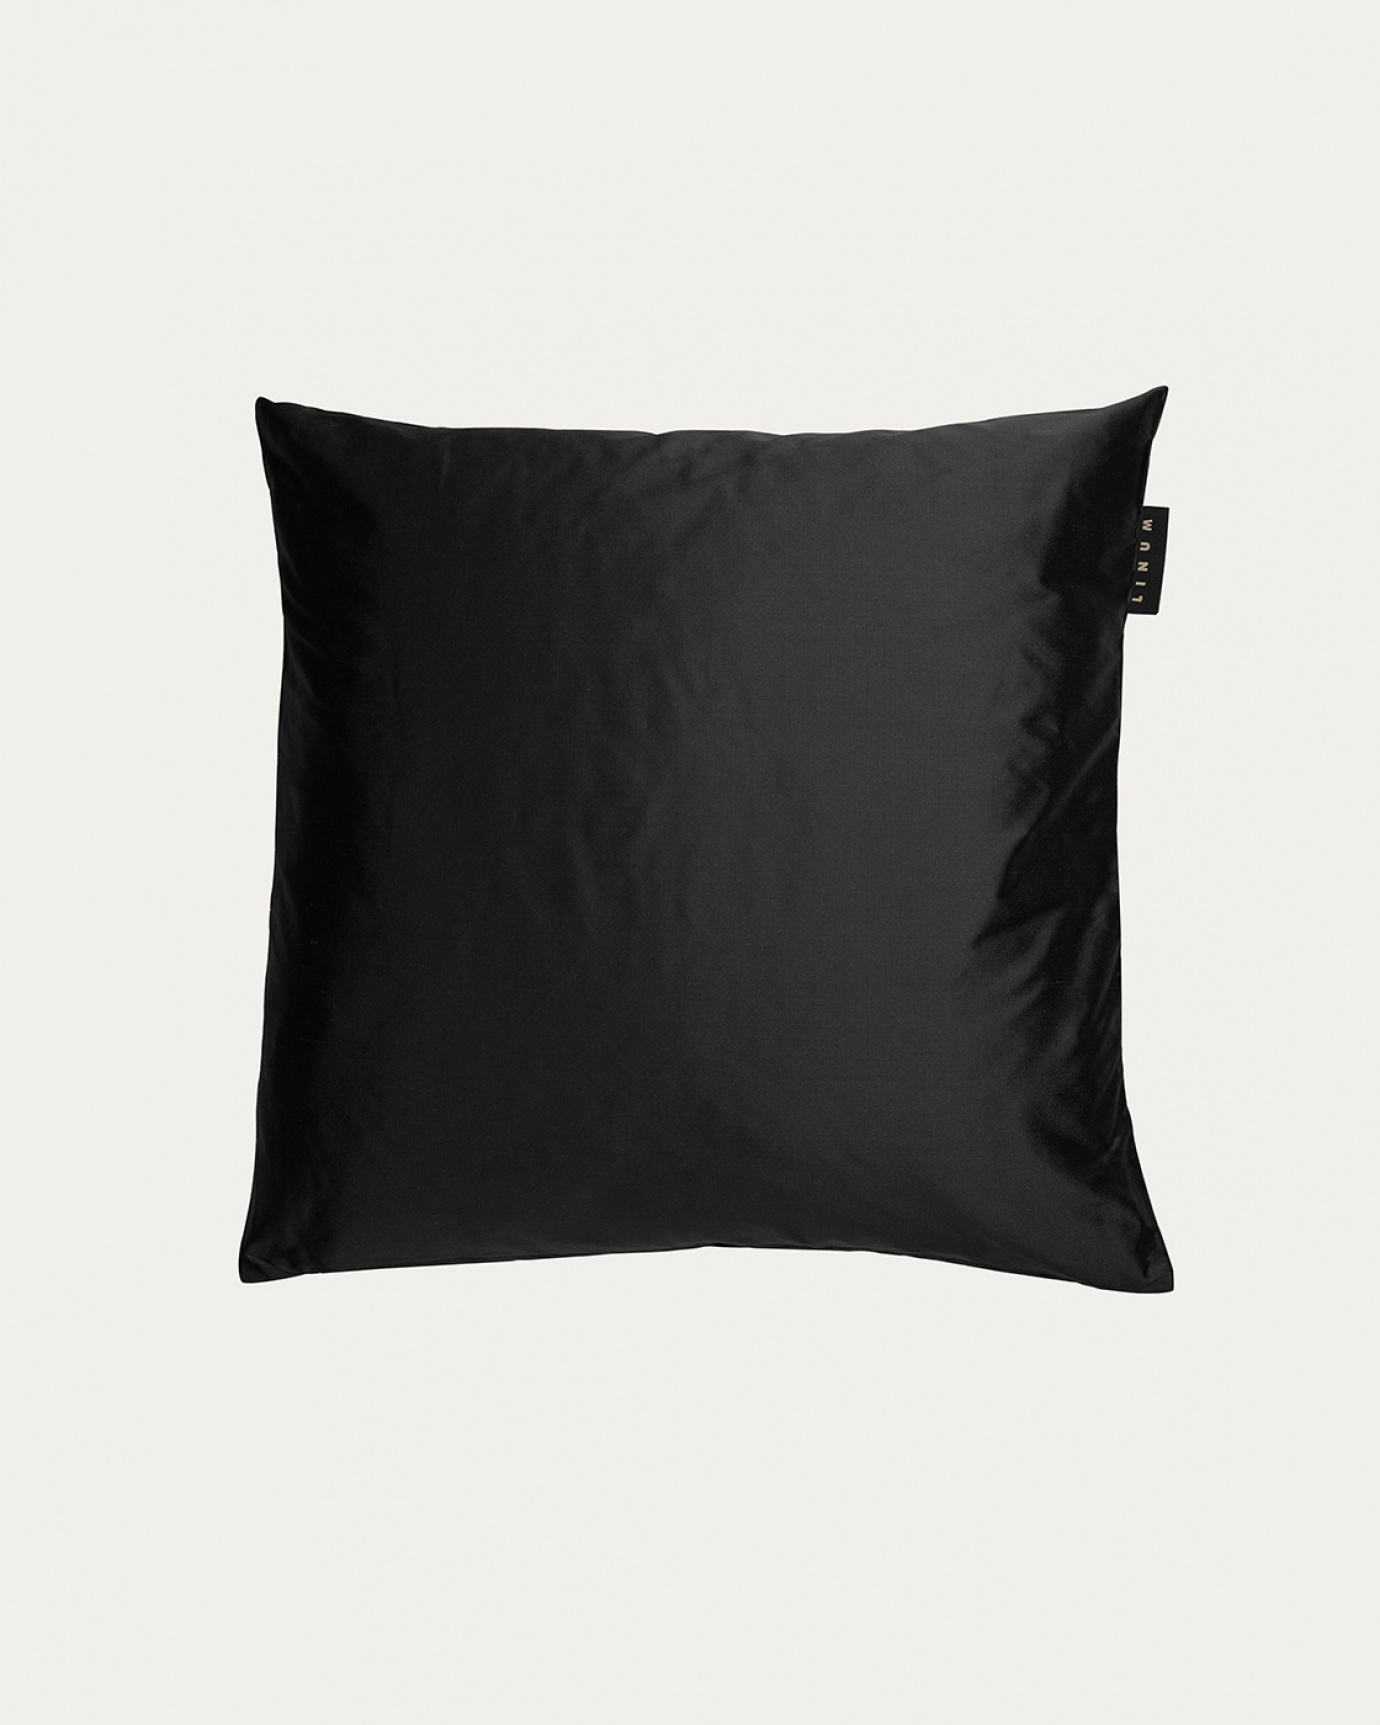 Produktbild schwarz SILK Kissenhülle aus 100% Dupionseide, die einen schönen Glanz verleiht von LINUM DESIGN. Größe 40x40 cm.